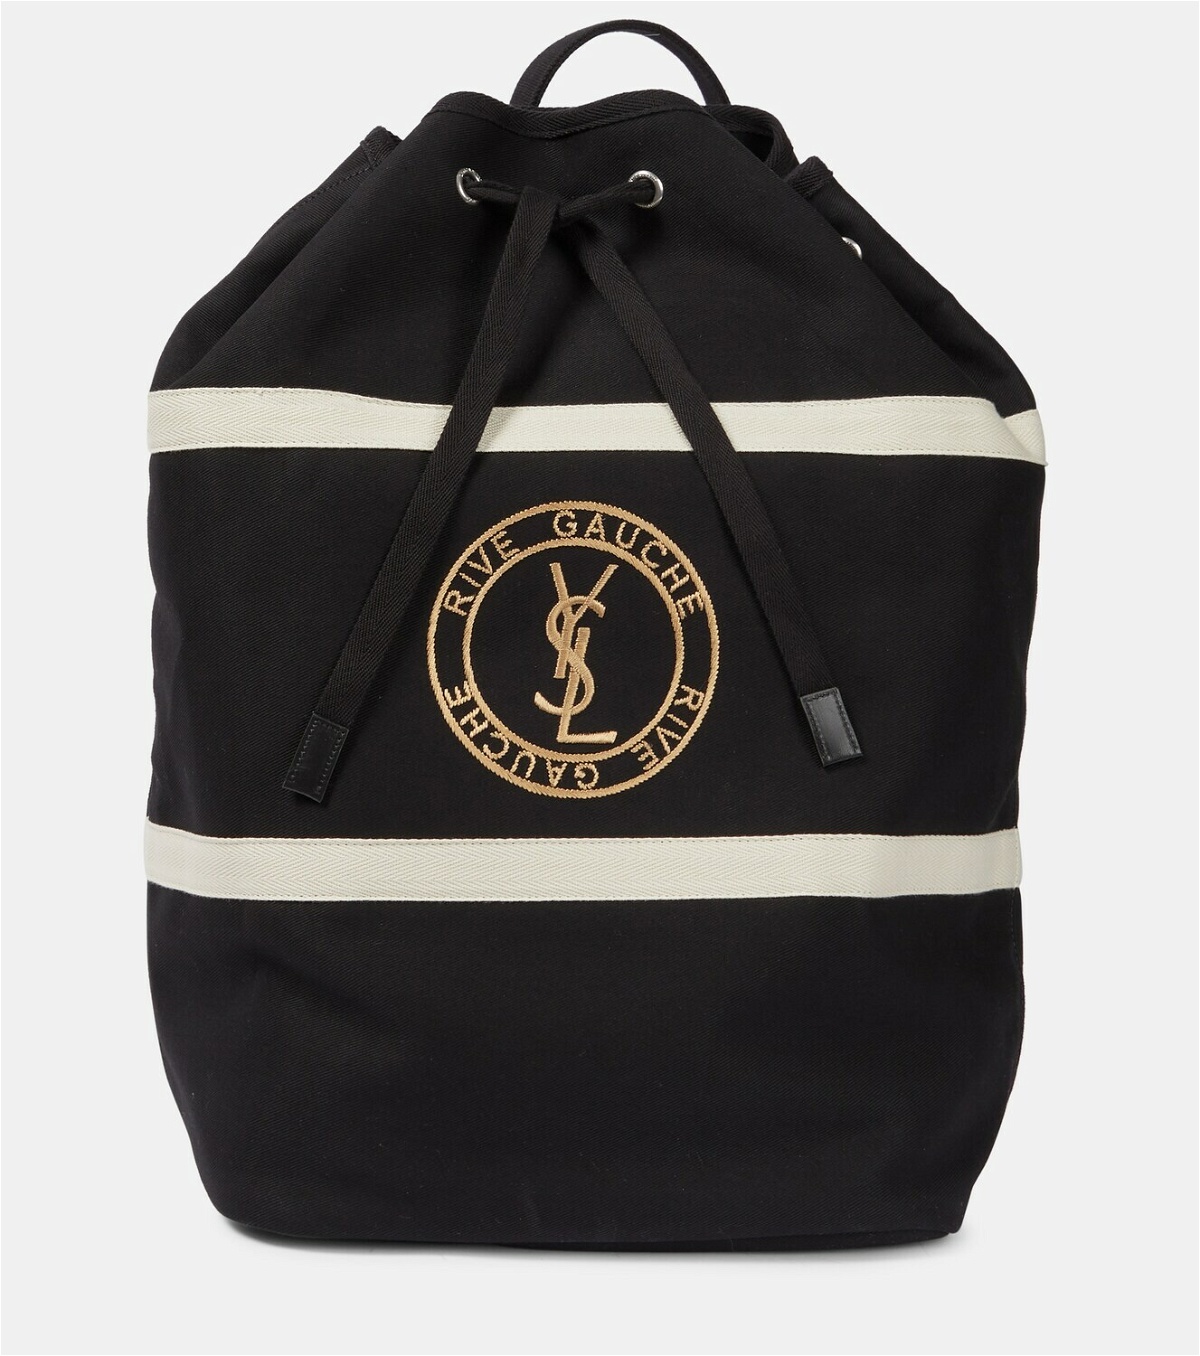 Saint Laurent Teddy White Coated Linen Drawstring Bucket Bag